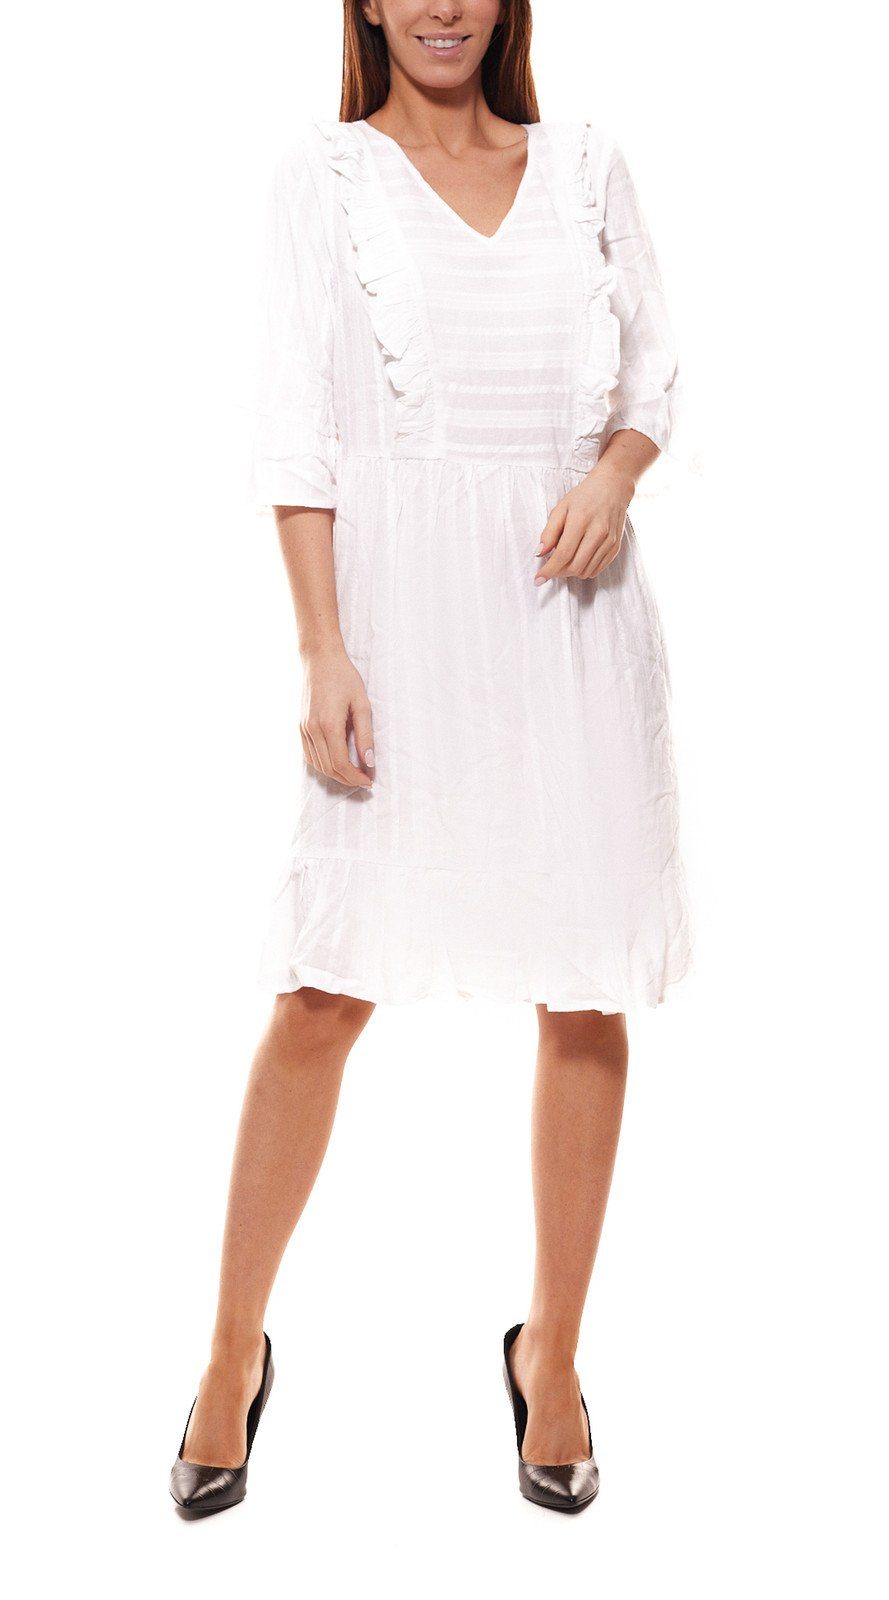 nümph Volantkleid »NÜMPH Beate Leinen-Kleid leicht transparentes Damen Mini- Kleid mit Unterkleid Volant-Kleid Weiß« online kaufen | OTTO